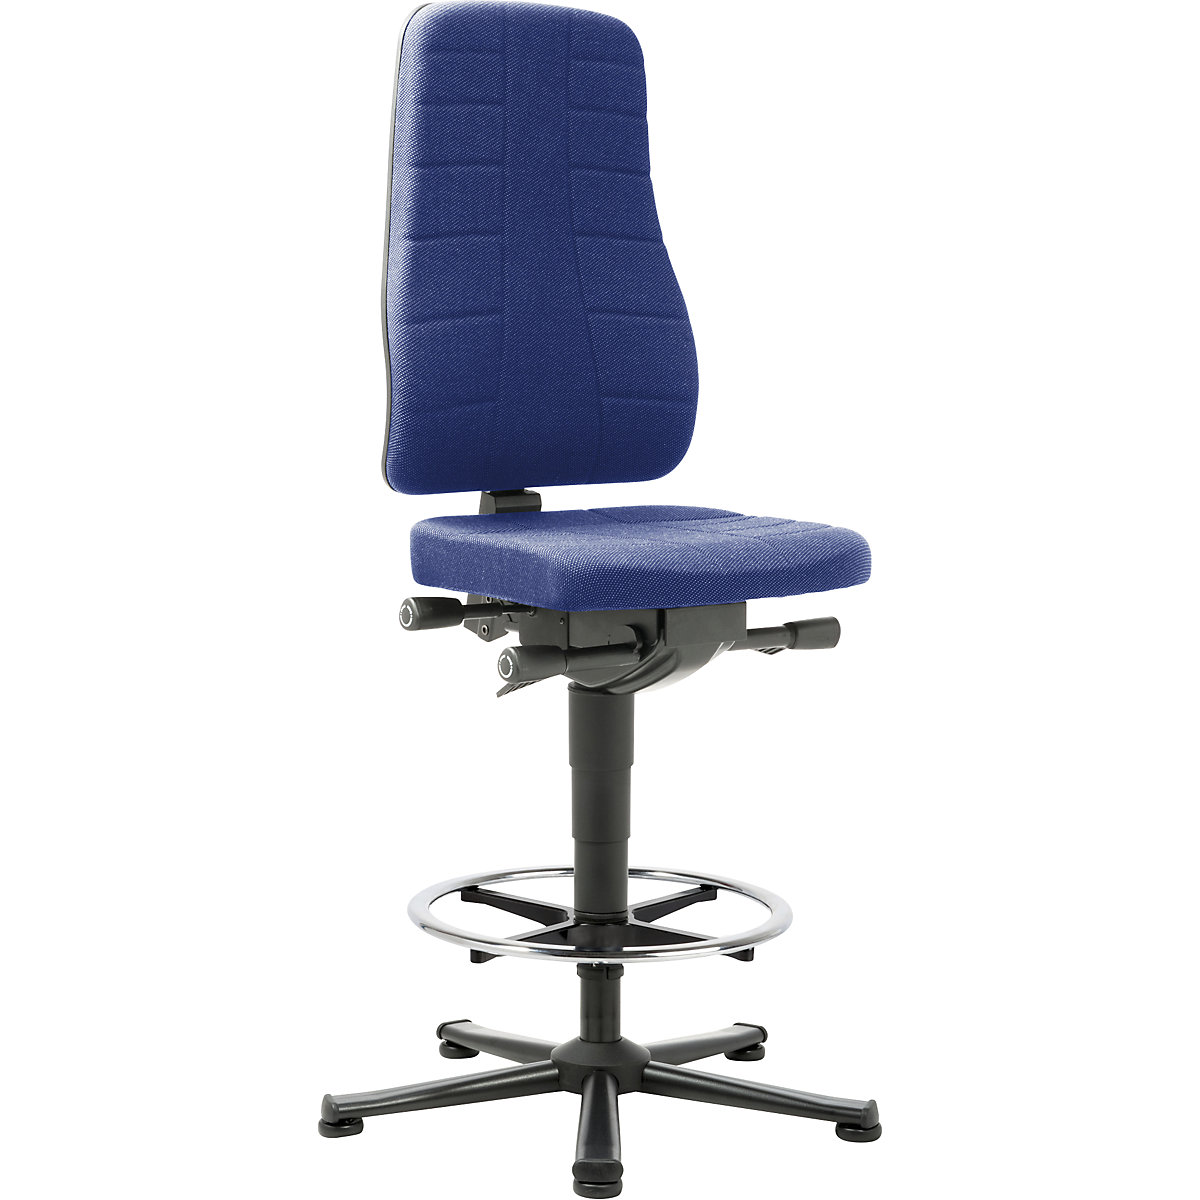 Pracovní otočná židle All-in-One – bimos, s podlahovými patkami a nožním kruhem, látkové čalounění, modré-7